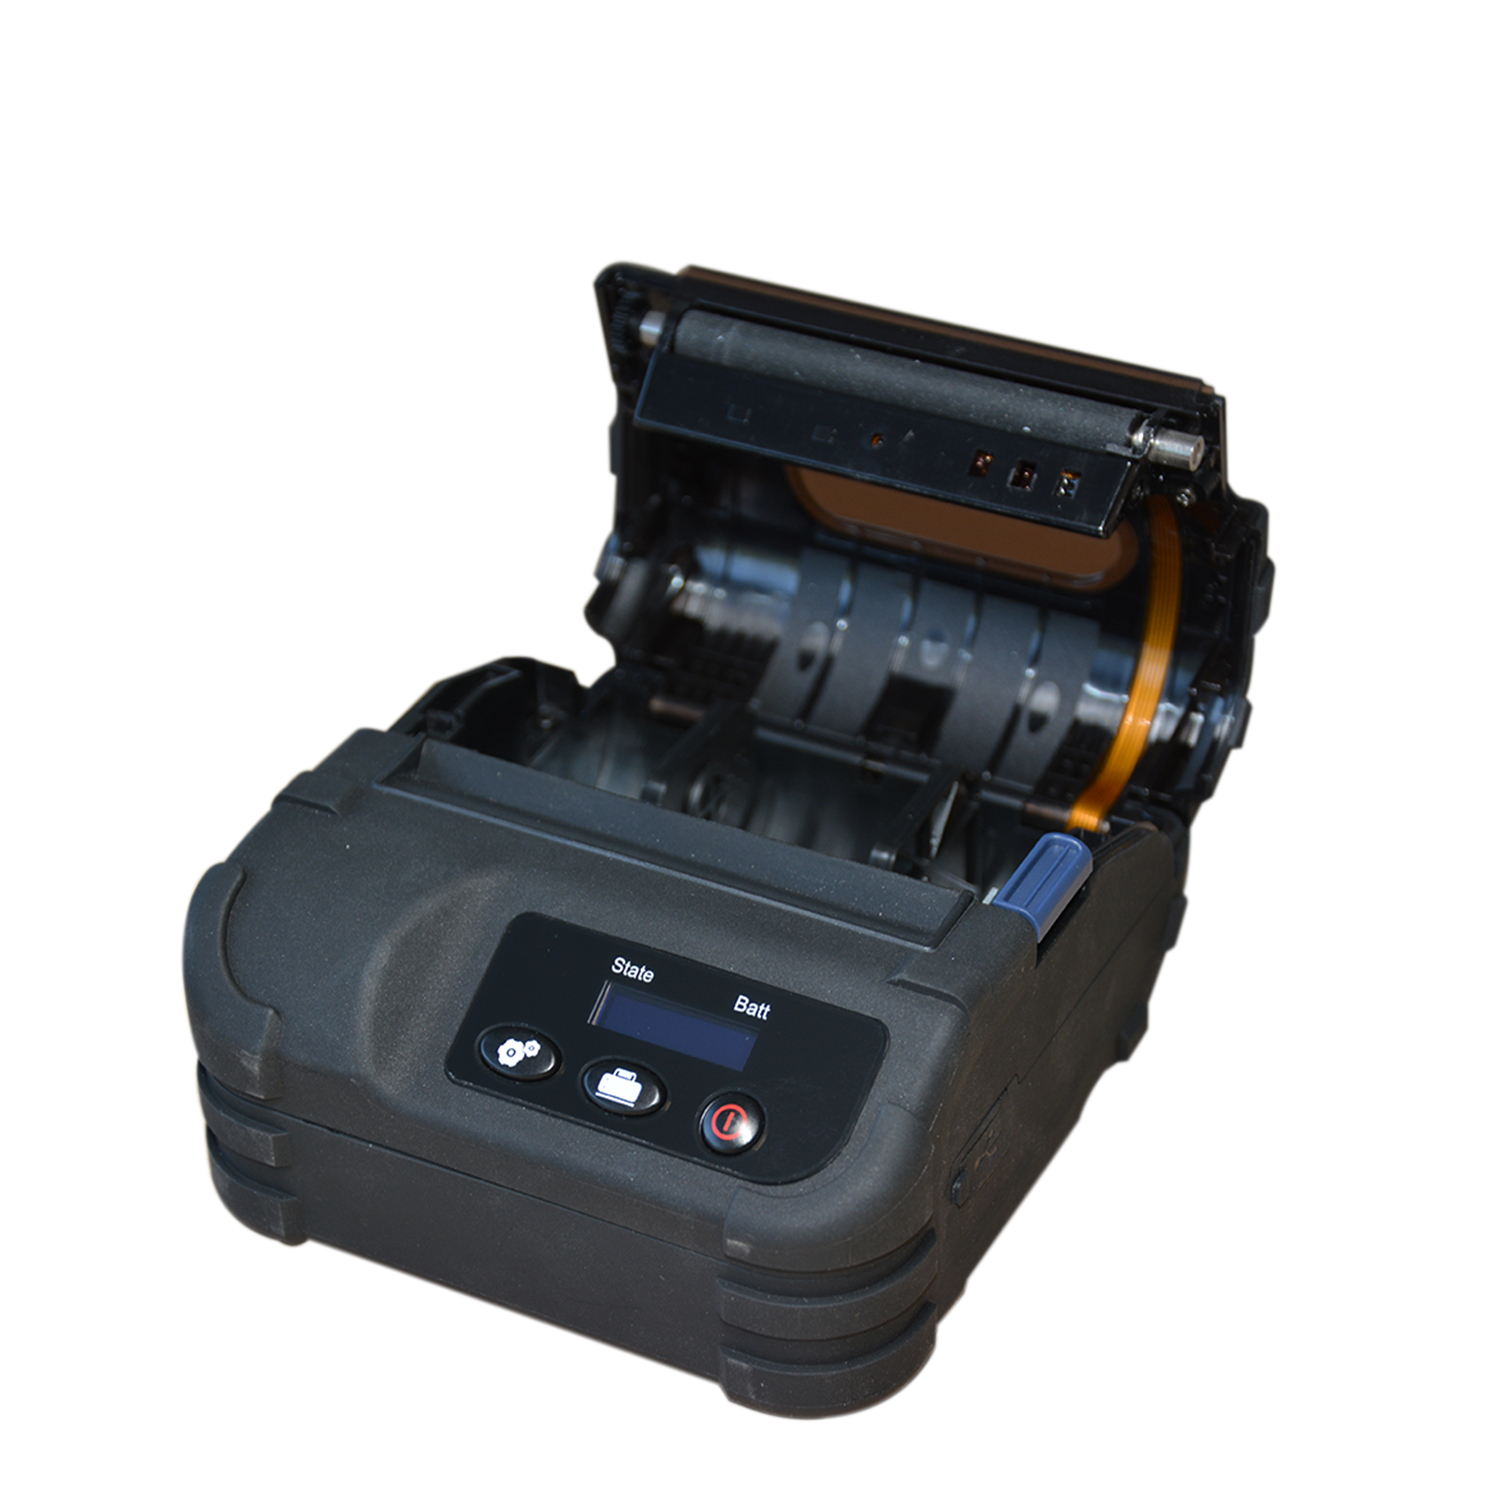 Мини-58/80 мм беспроводной Bluetooth-термомобильный принтер для этикеток HCC-L36